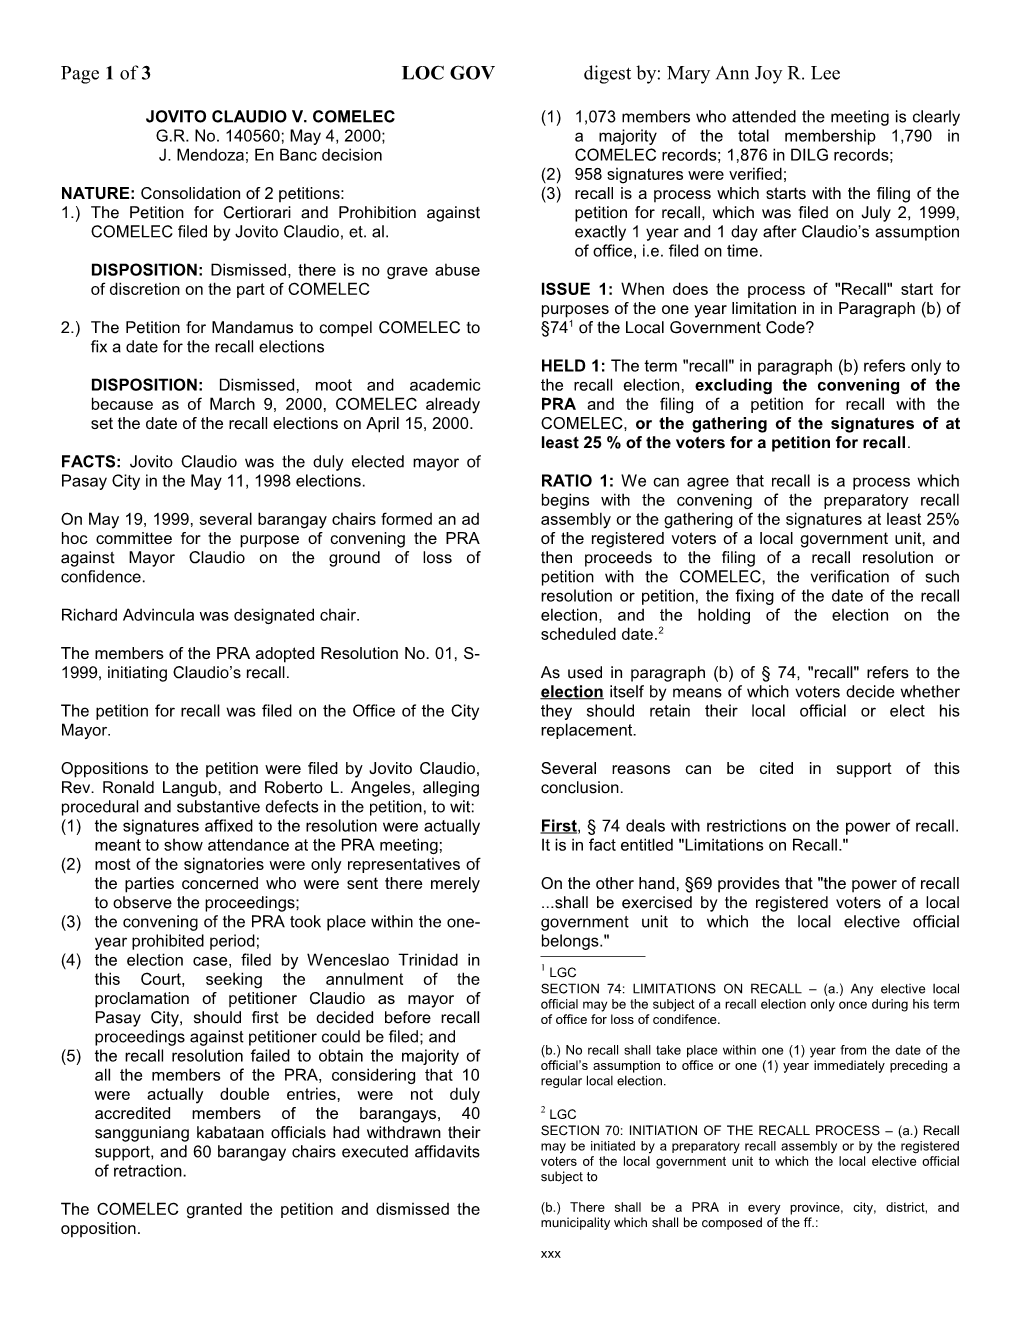 Page 1 of 3LOC GOV Digest By: Mary Ann Joy R. Lee